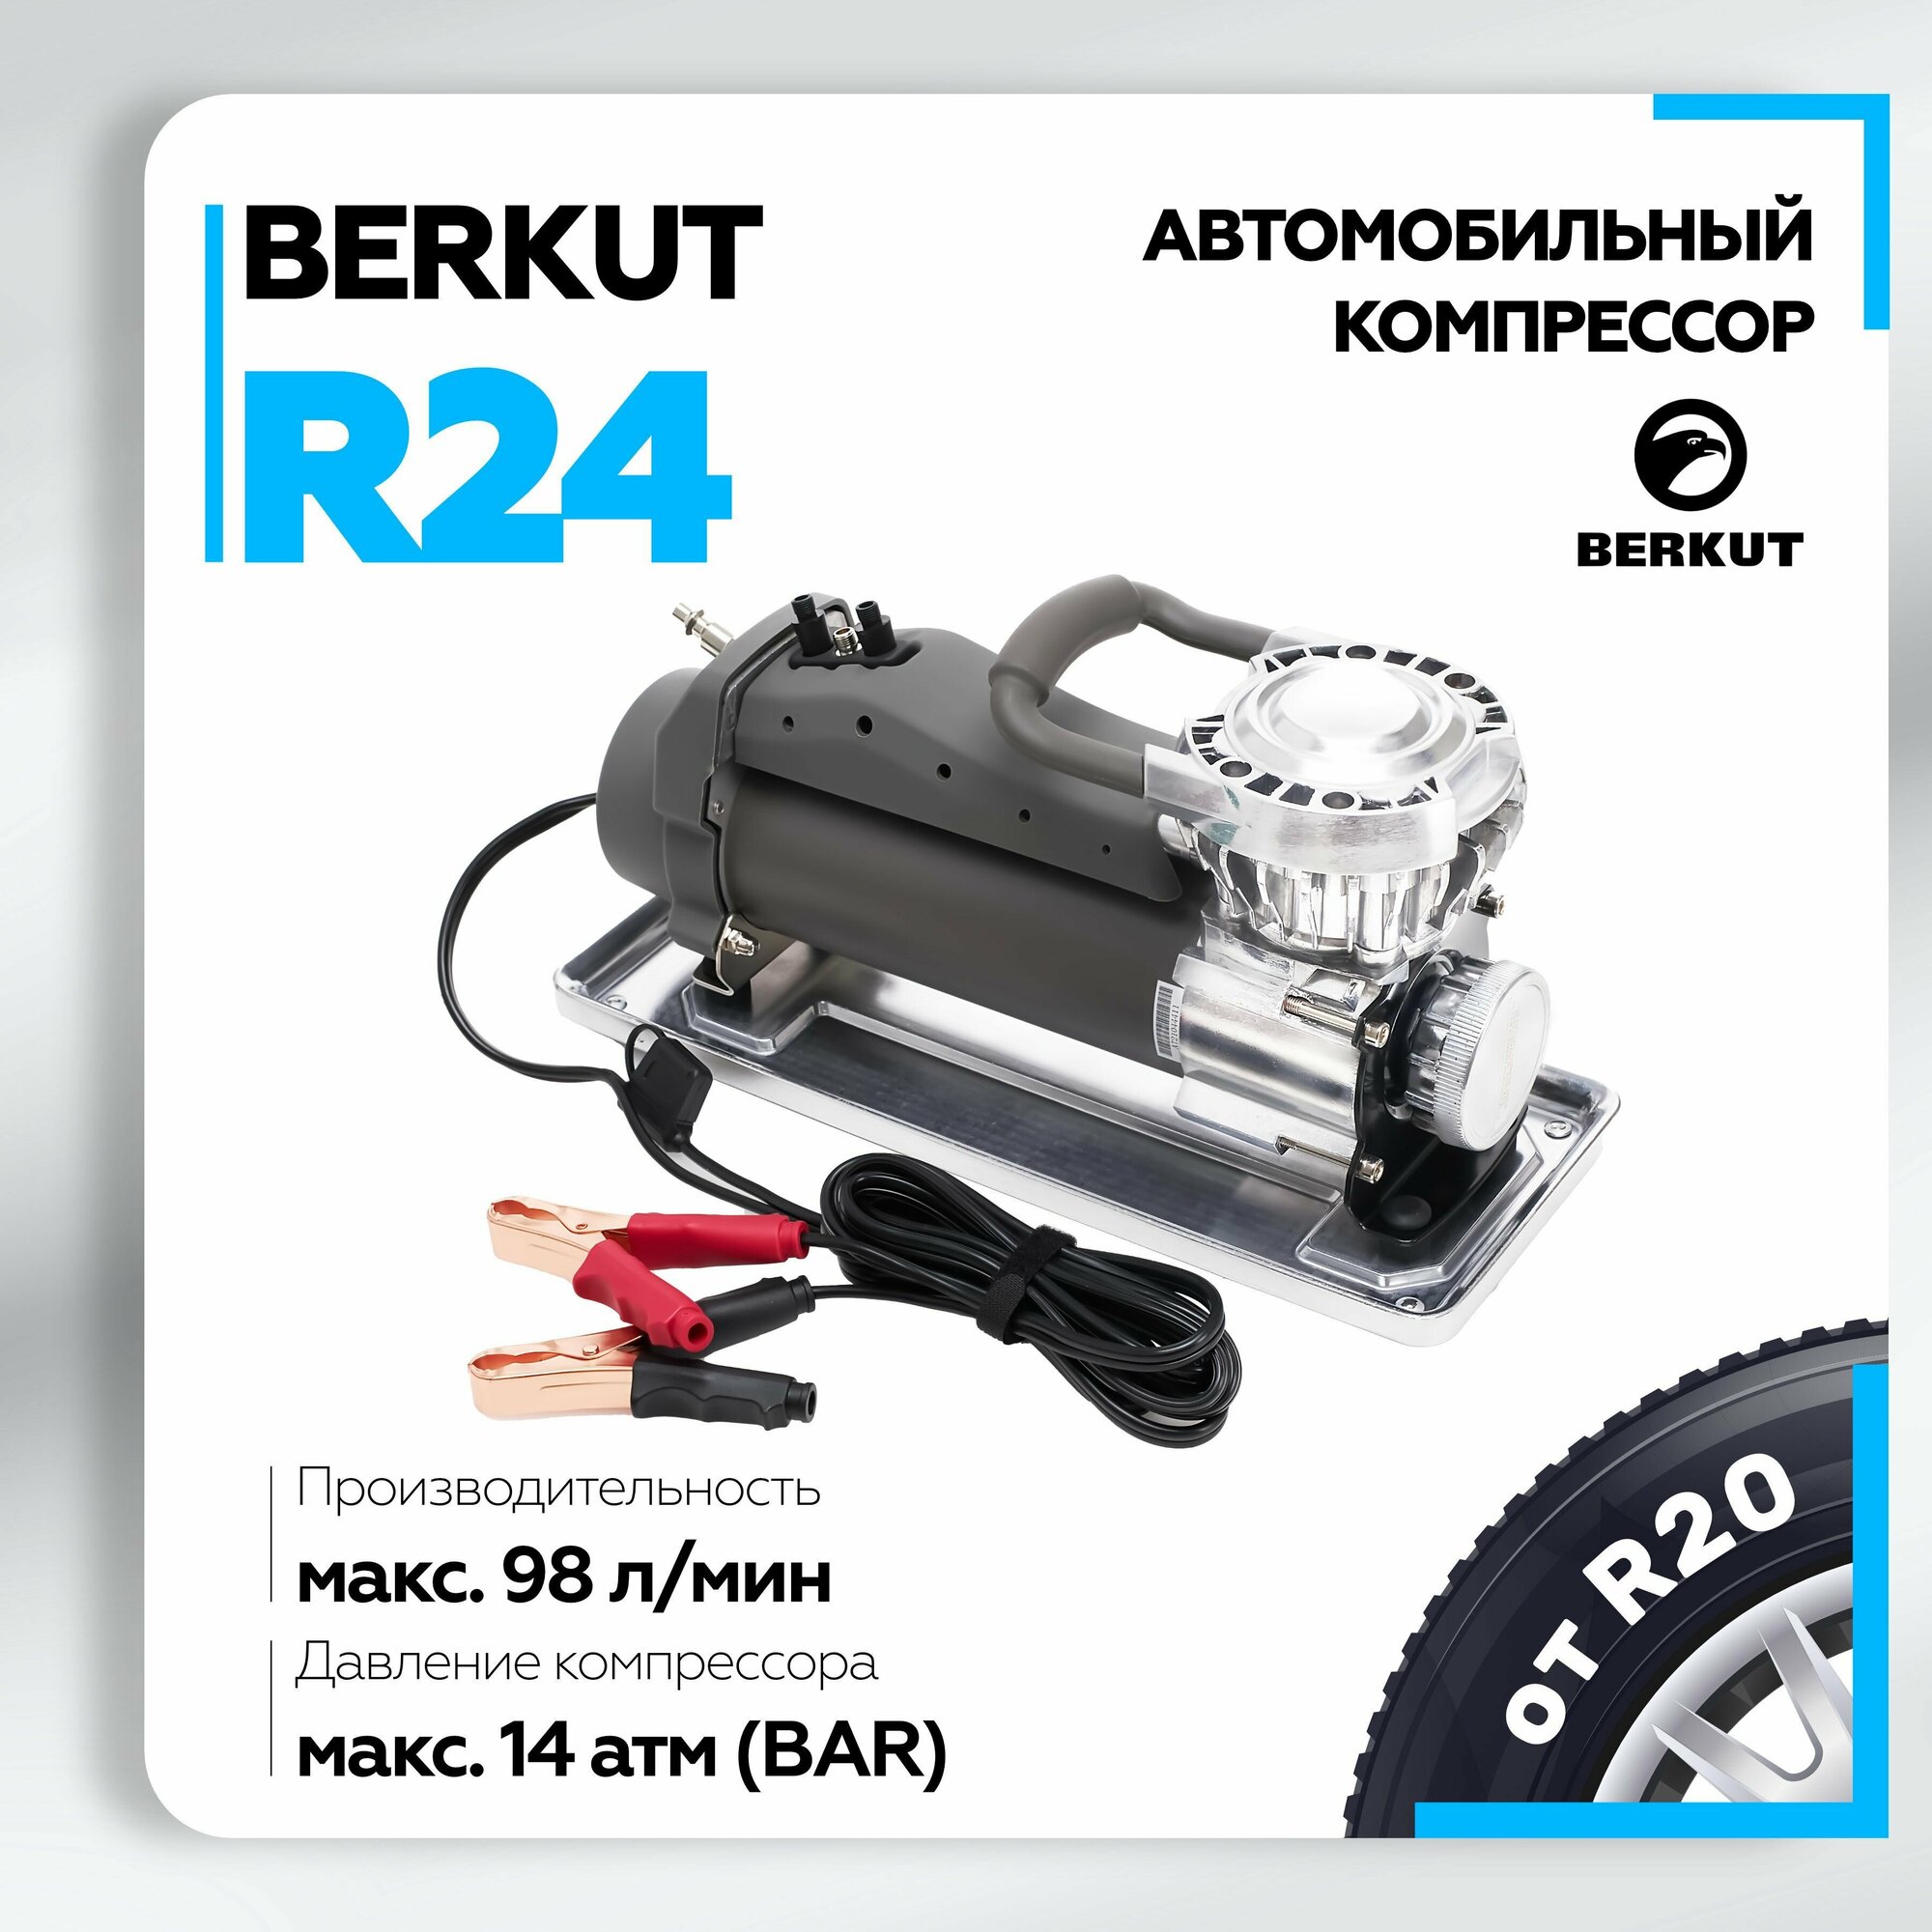 Автомобильный компрессор BERKUT R24 98 л/мин 14 атм